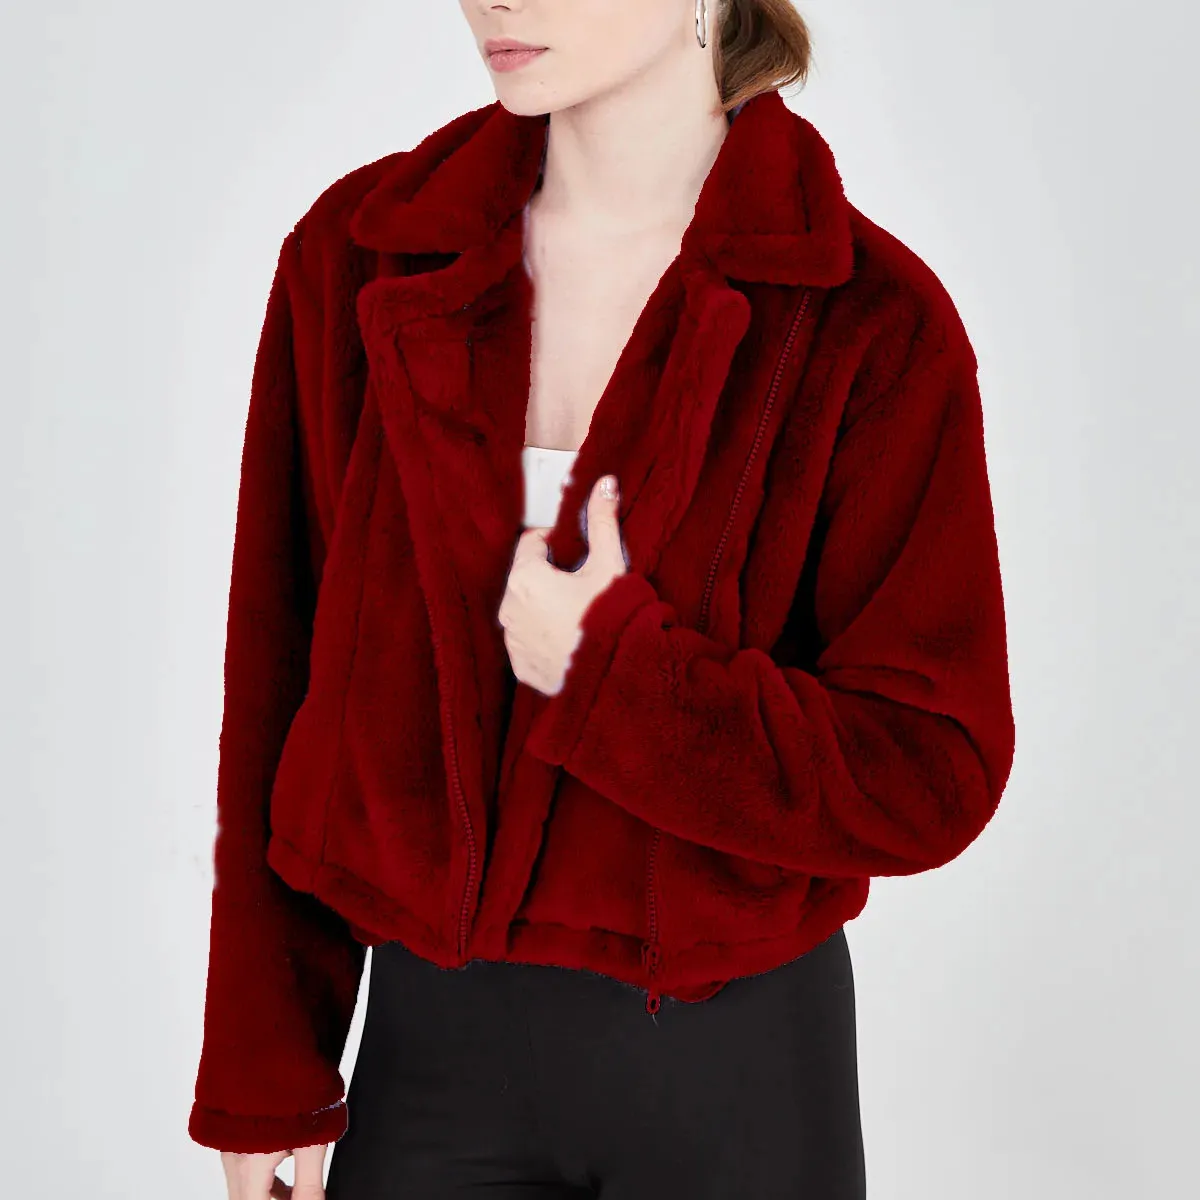 Claret kain bulu mewah ritsleting merah Claret kain bulu warna merah saku ritsleting mantel mewah standar detail